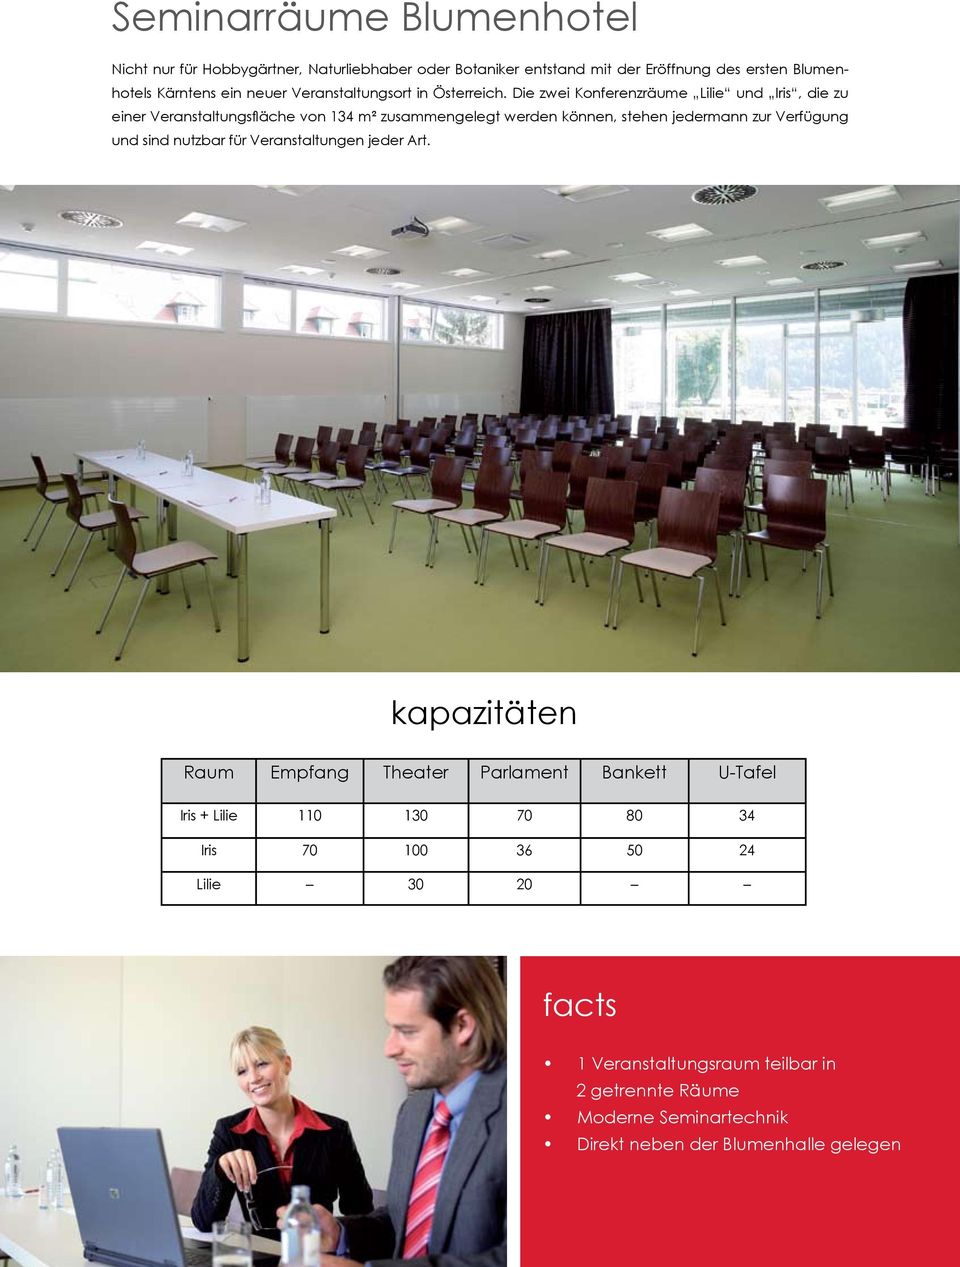 Die zwei Konferenzräume Lilie und Iris, die zu einer Veranstaltungsfläche von 134 m² zusammengelegt werden können, stehen jedermann zur Verfügung und sind